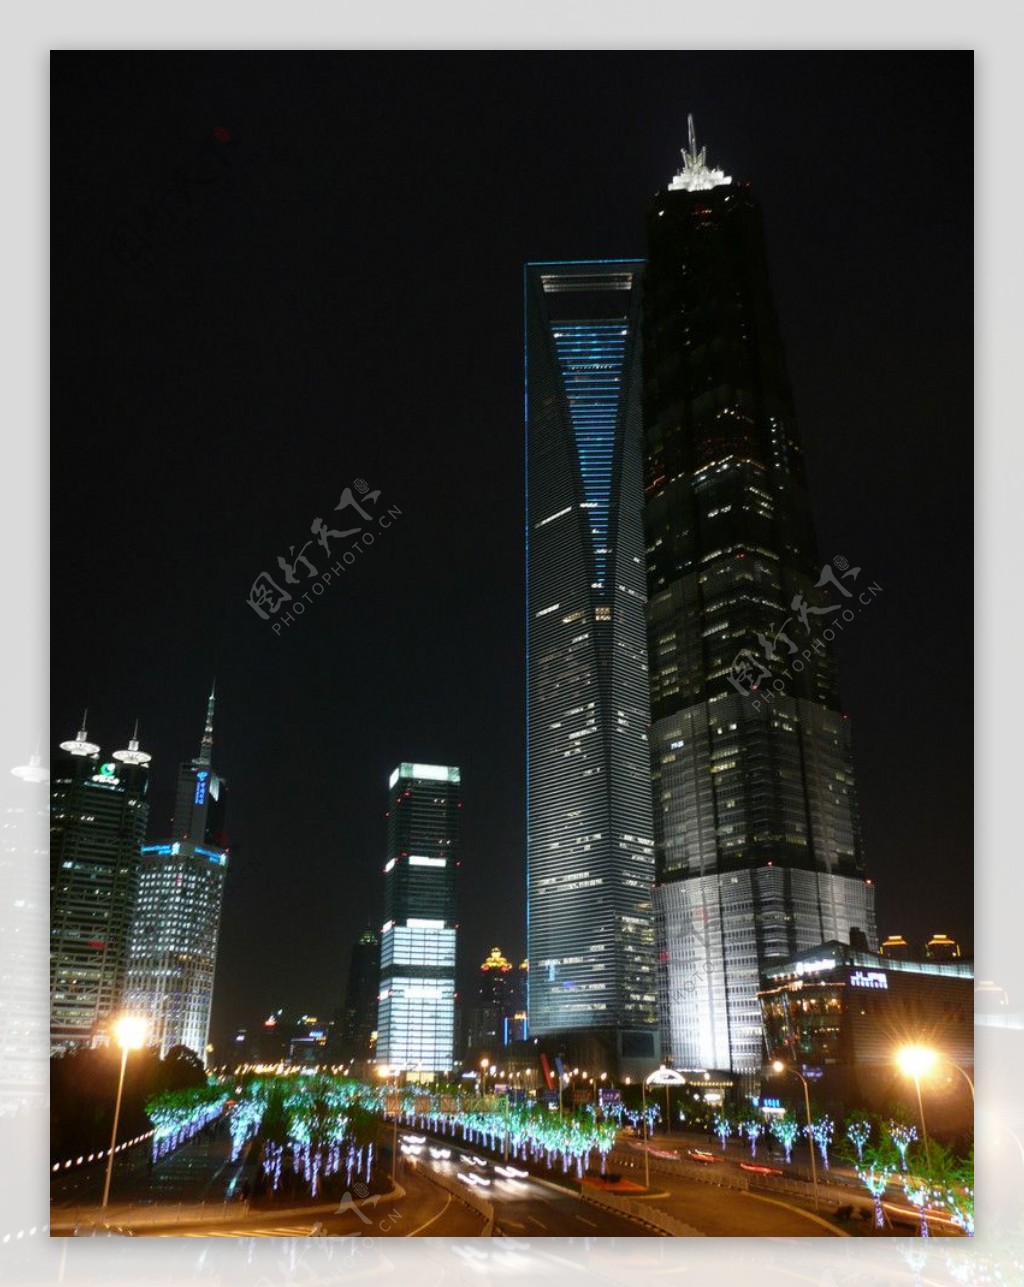 上海浦东陆家嘴世纪大道夜景图片